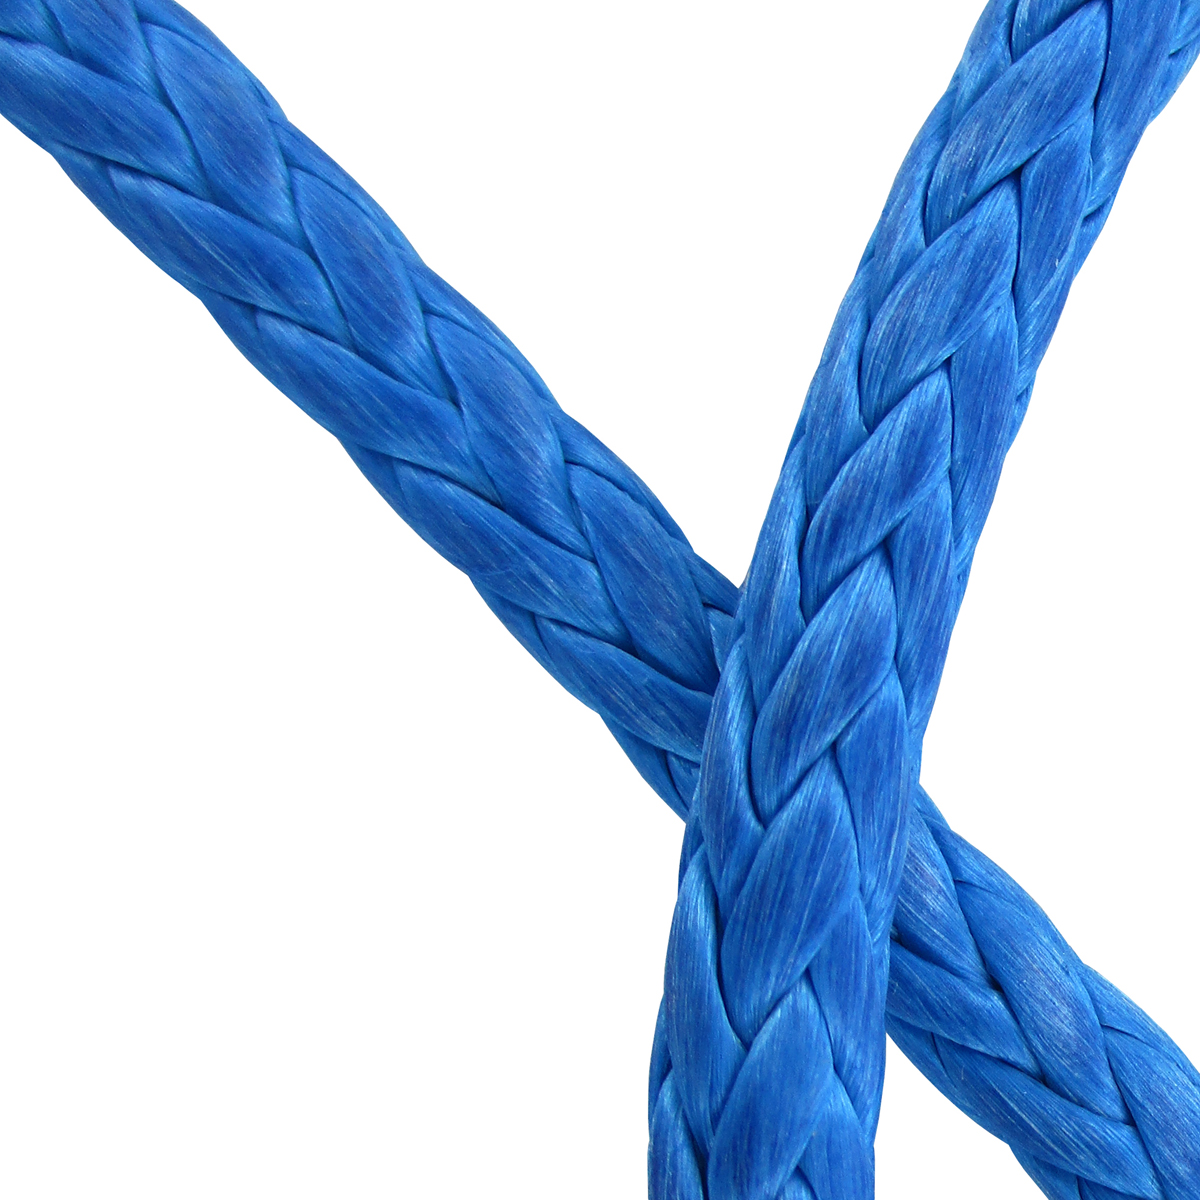 Amsteel Blue rope | Seattle Marine